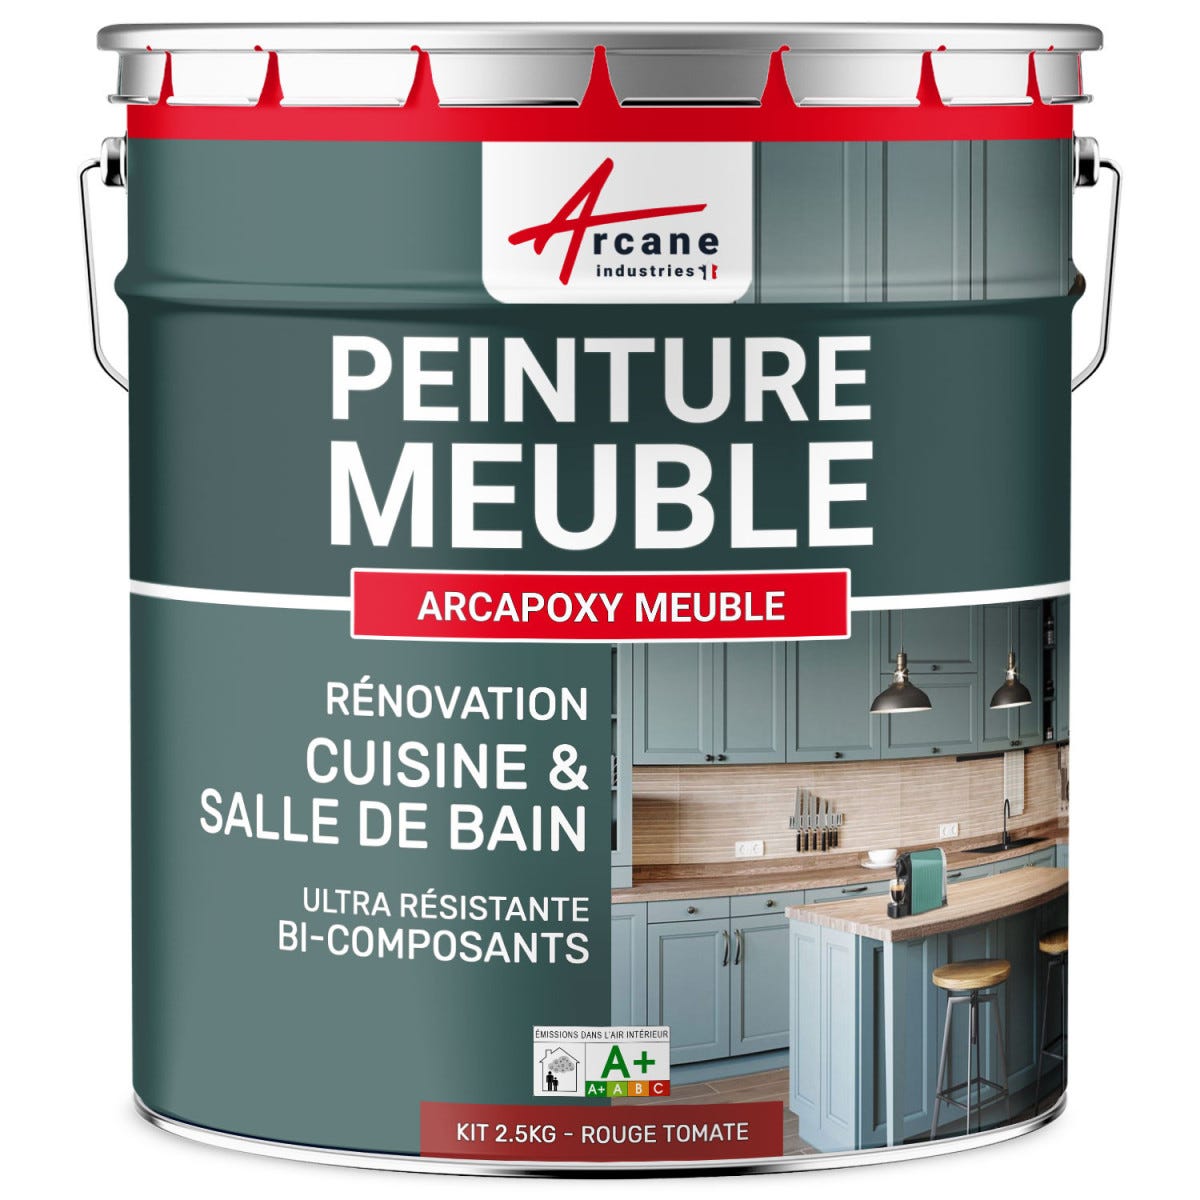 Peinture Meuble Cuisine, Salle de Bain - ARCAPOXY MEUBLE - 2.5 kg (jusqu'à 30 m² en 2 couches) - Rouge Tomate - RAL 3013 - ARCANE INDUSTRIES 5